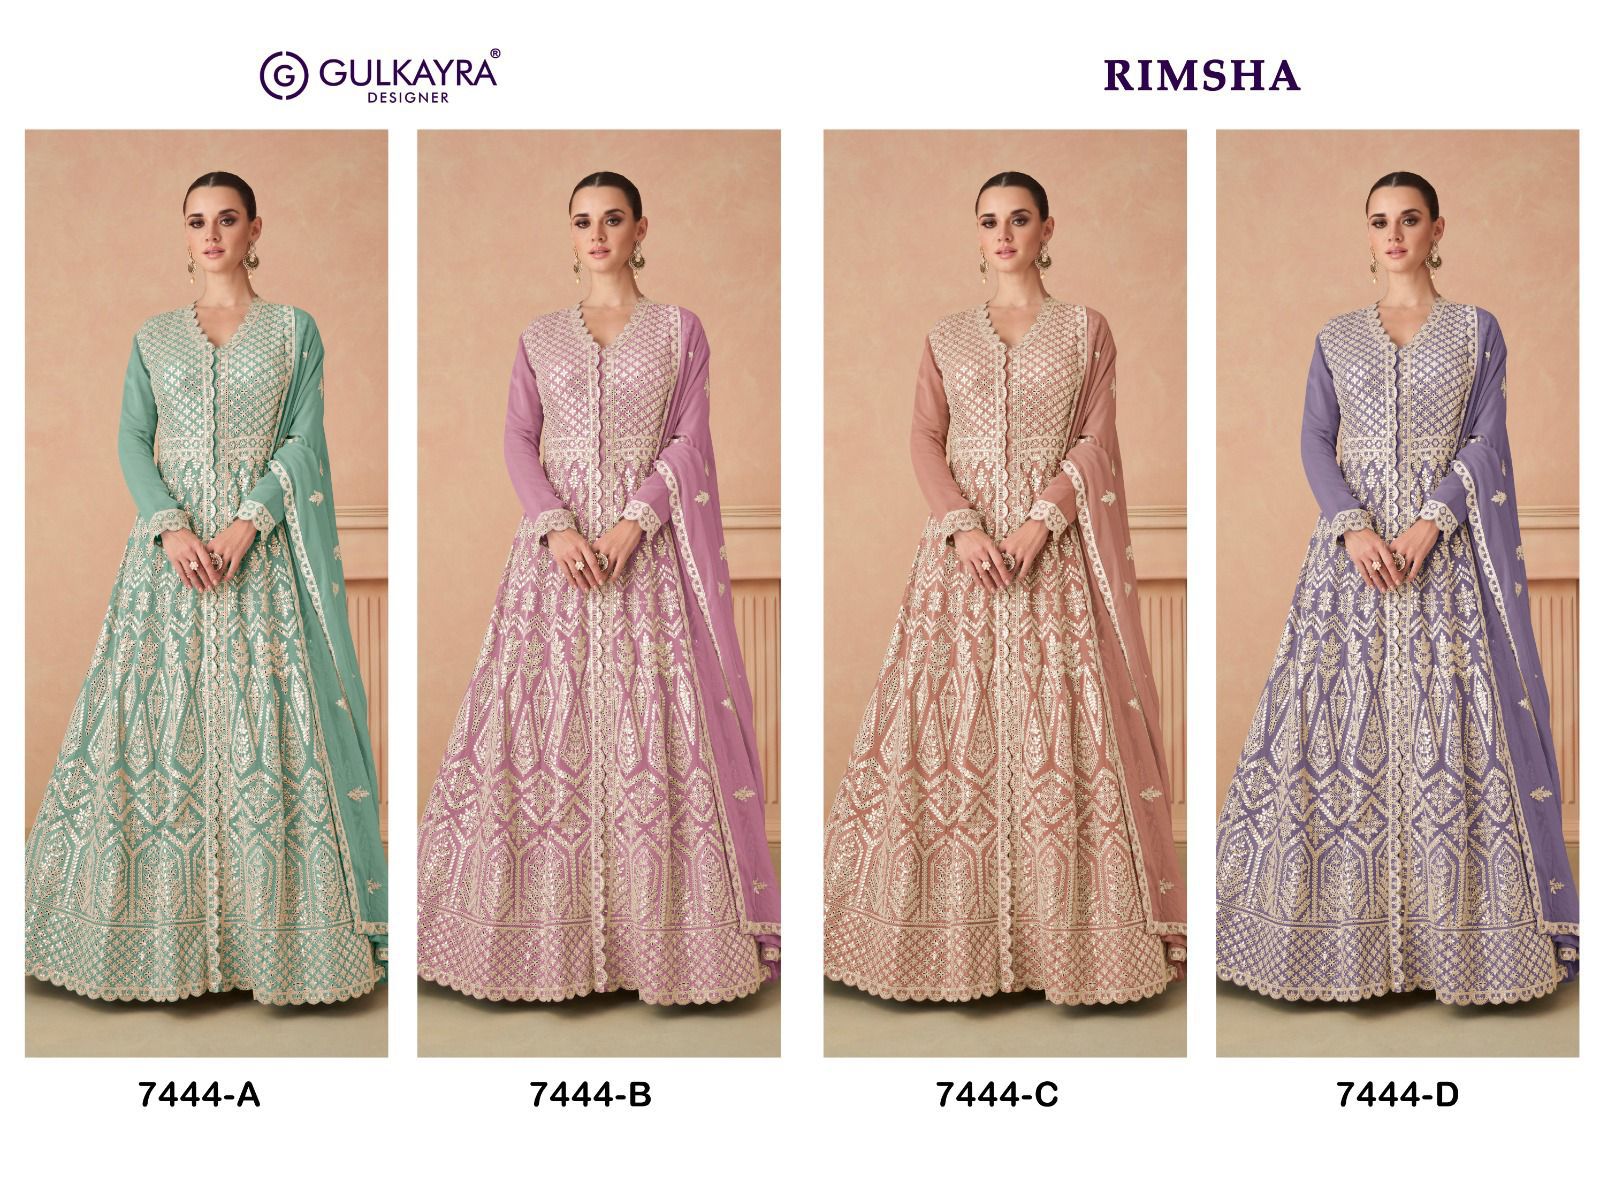 Gulkayra Rimsha collection 3